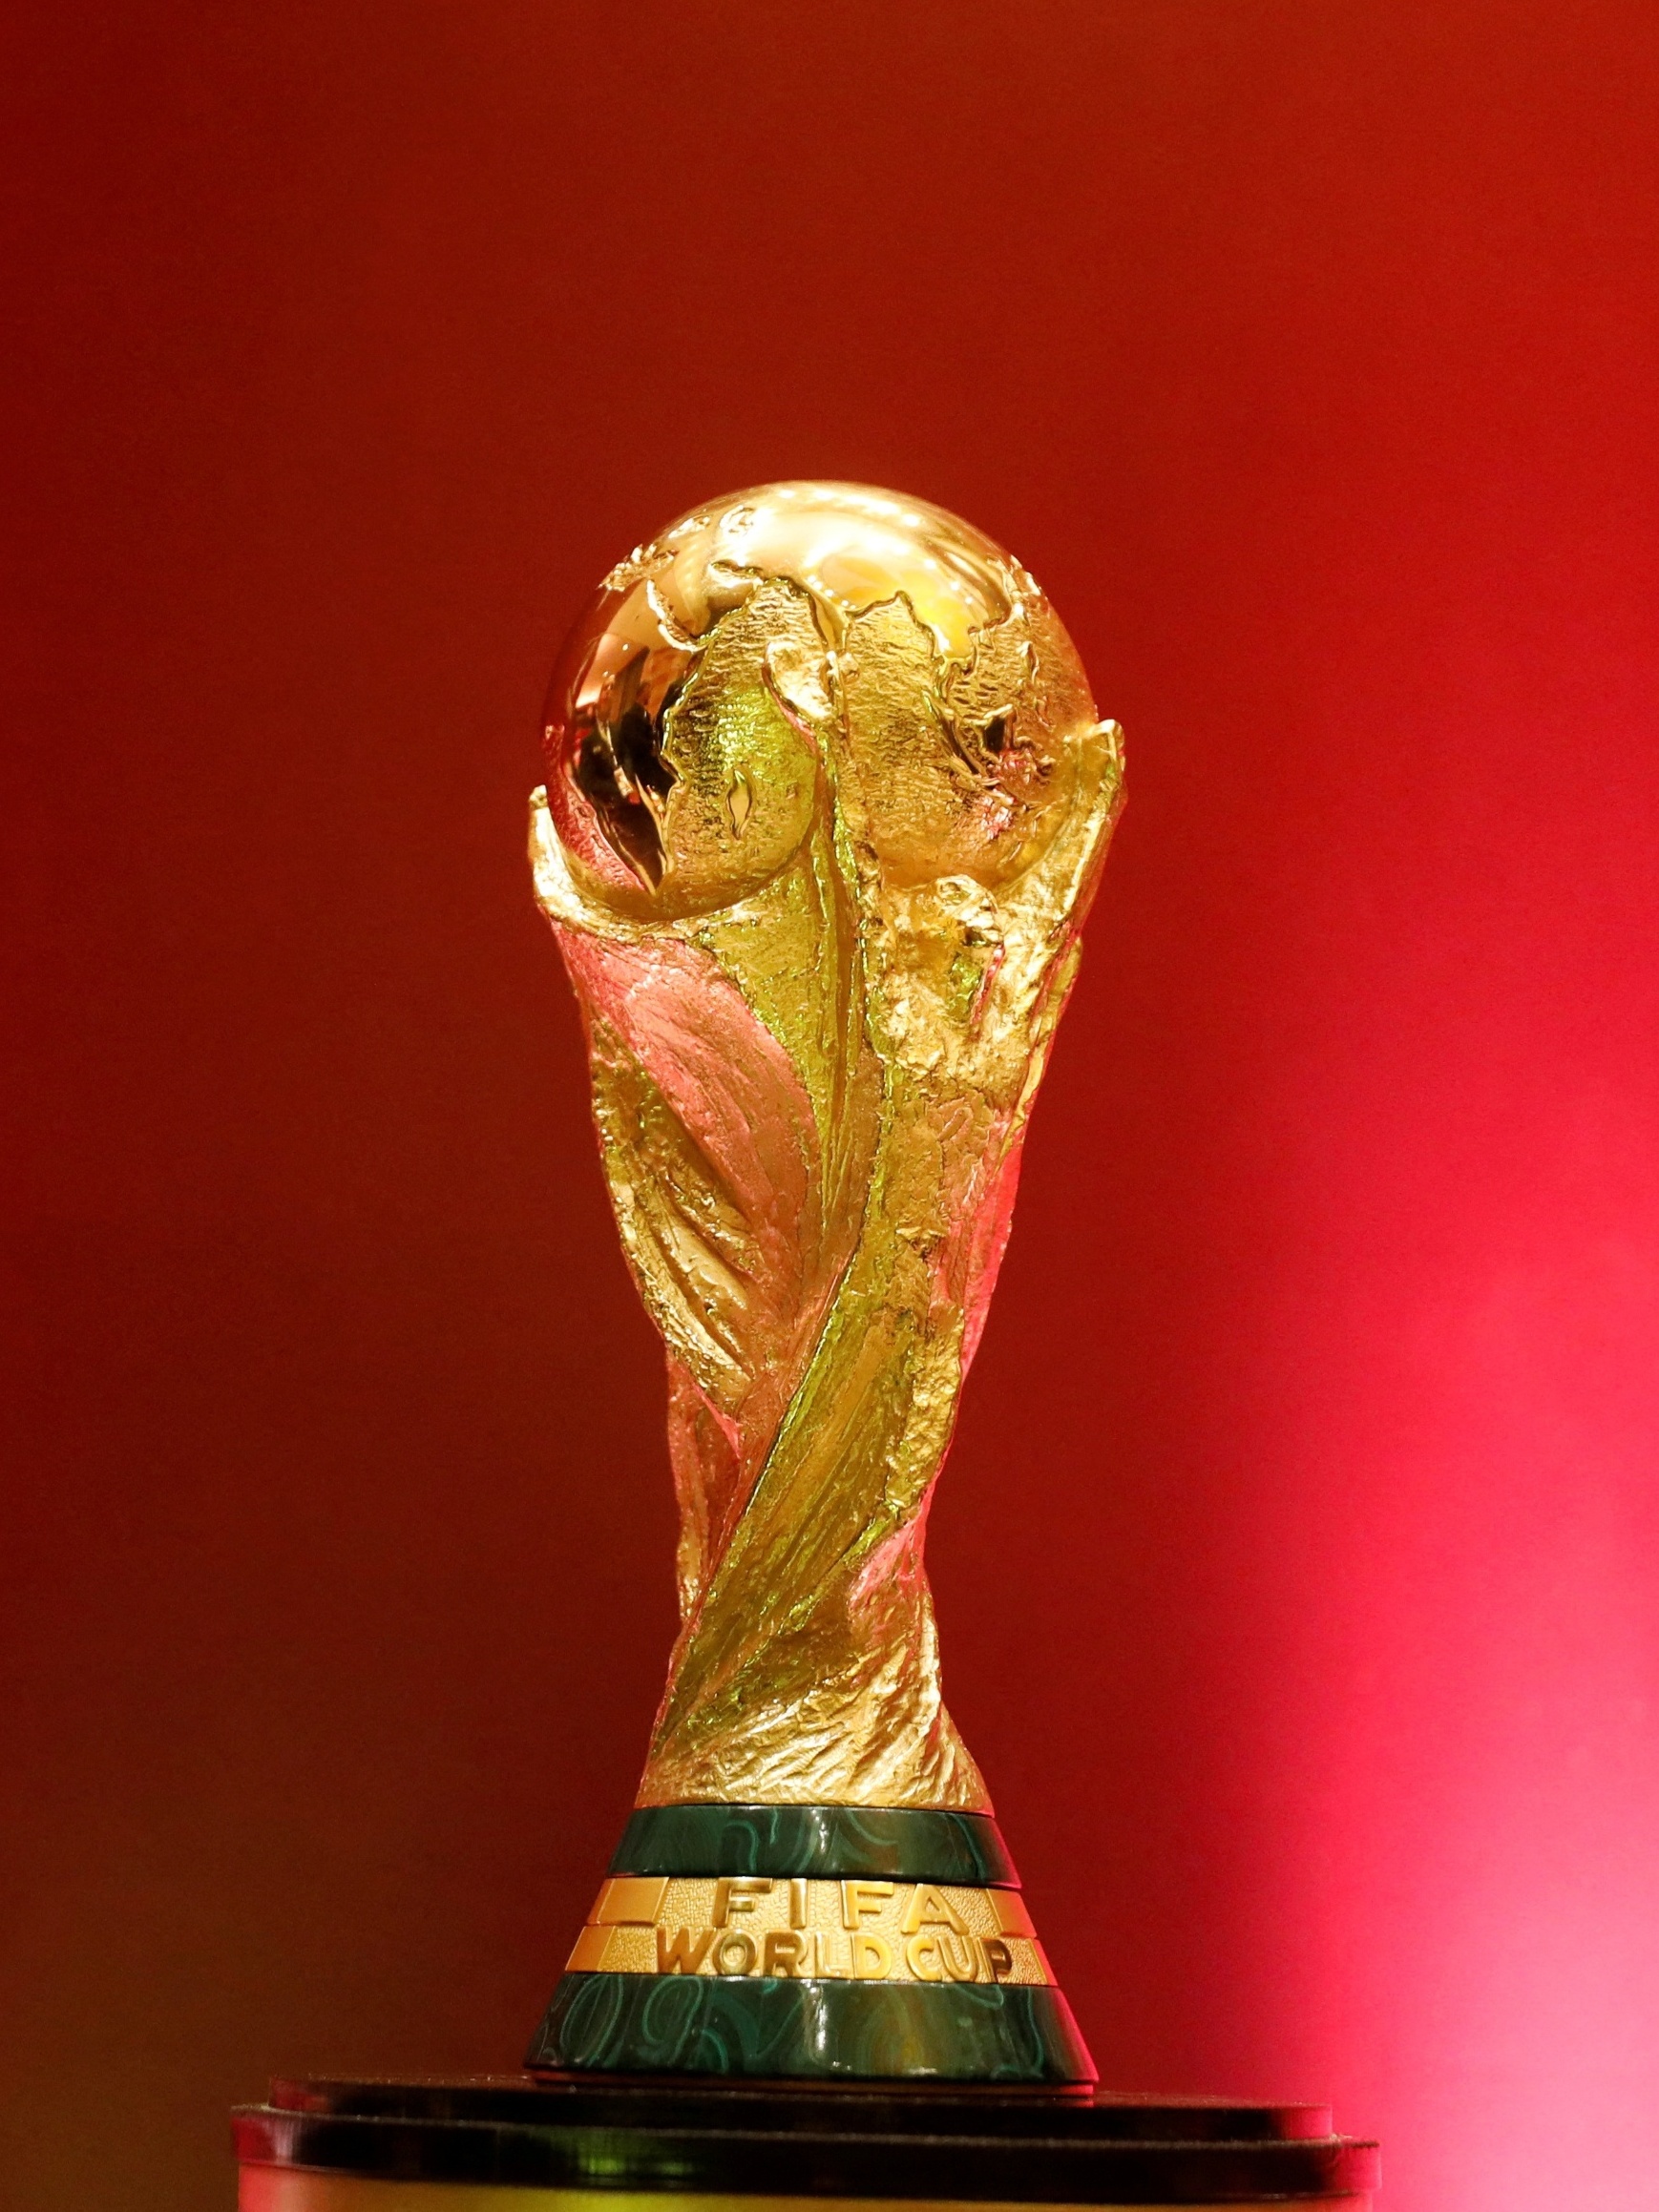 Eliminatórias para a Copa do Mundo de 2022: onde assistir aos jogos das  seleções europeias?